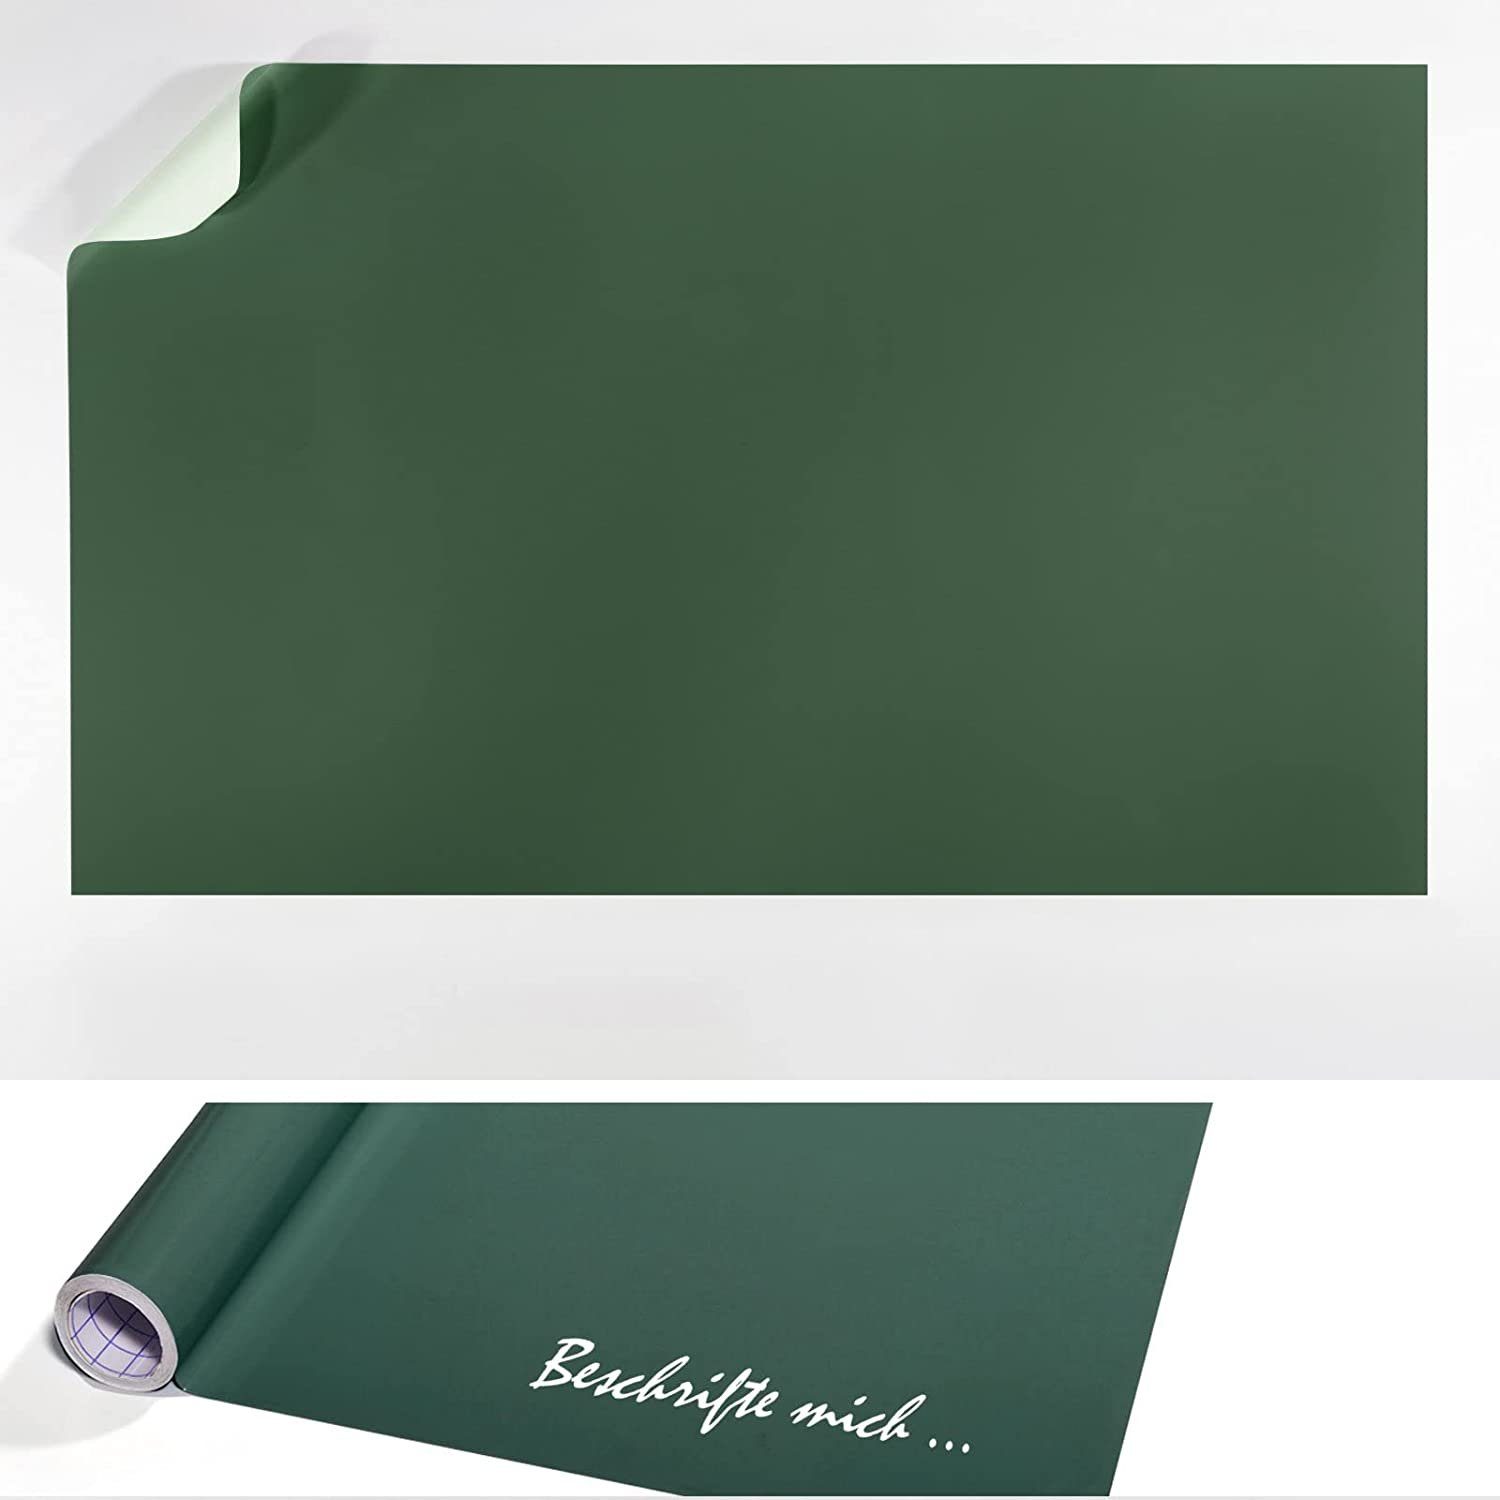 Karat Tafelfolie Grün selbstklebend selbstklebend